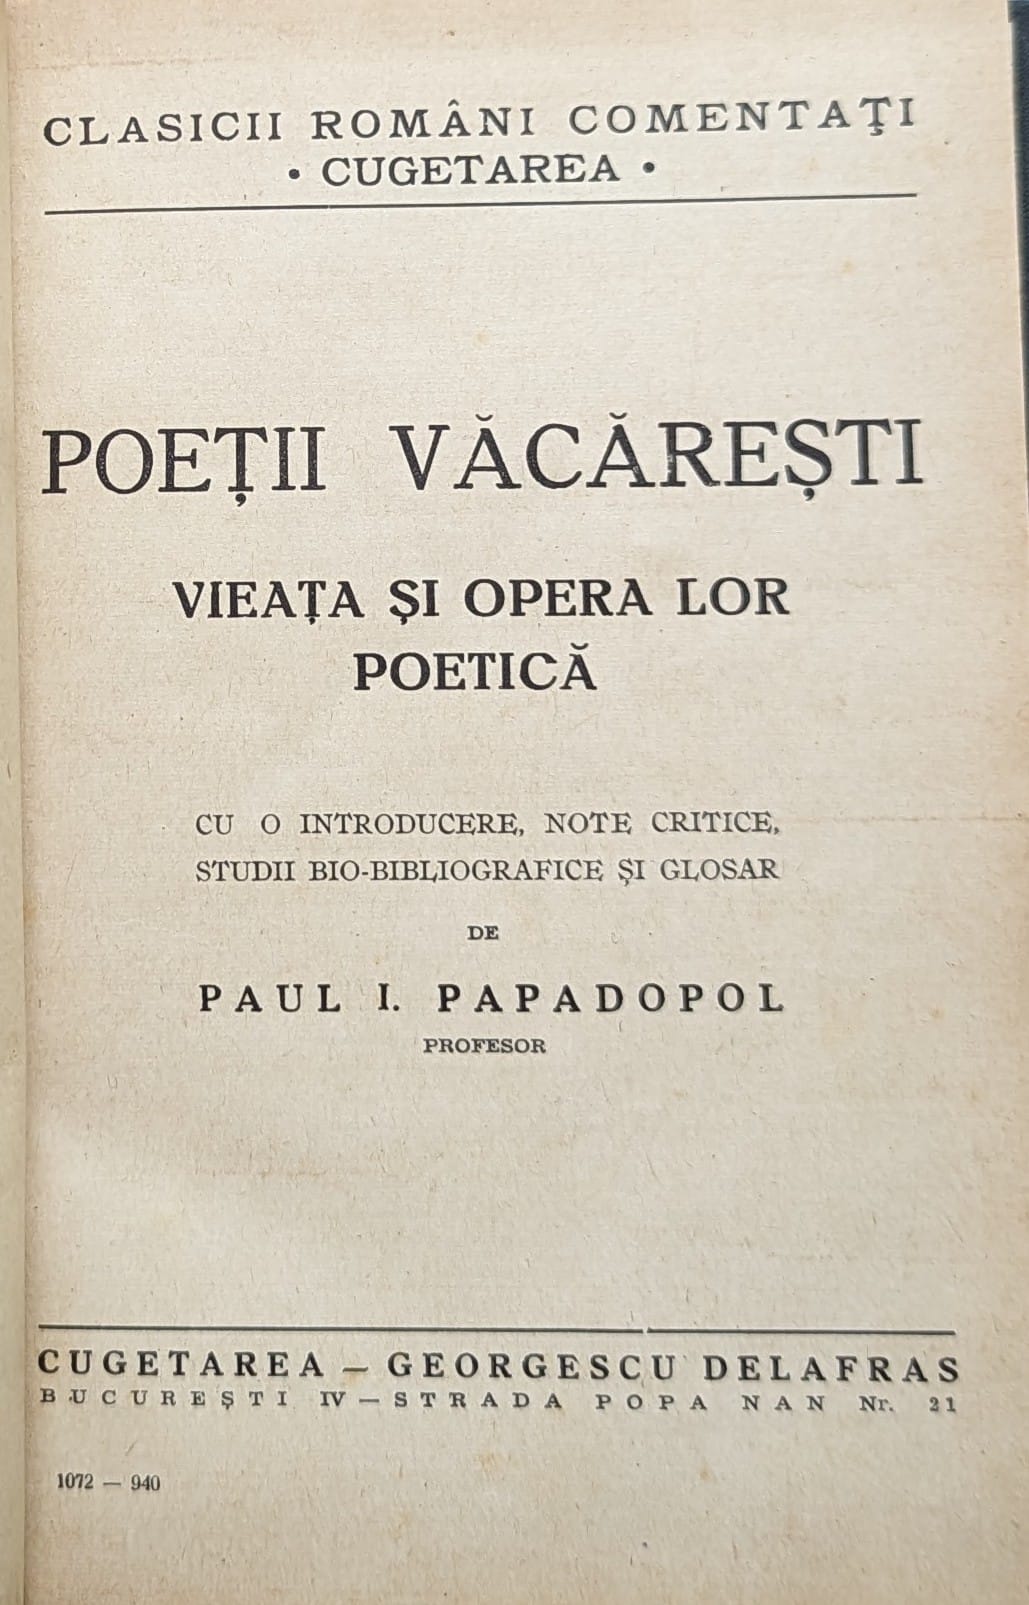 poetii vacaresti vieata si opera lor poetica (legata si cartonata)                                   editie ingrijita de paul i. papadopol                                                               